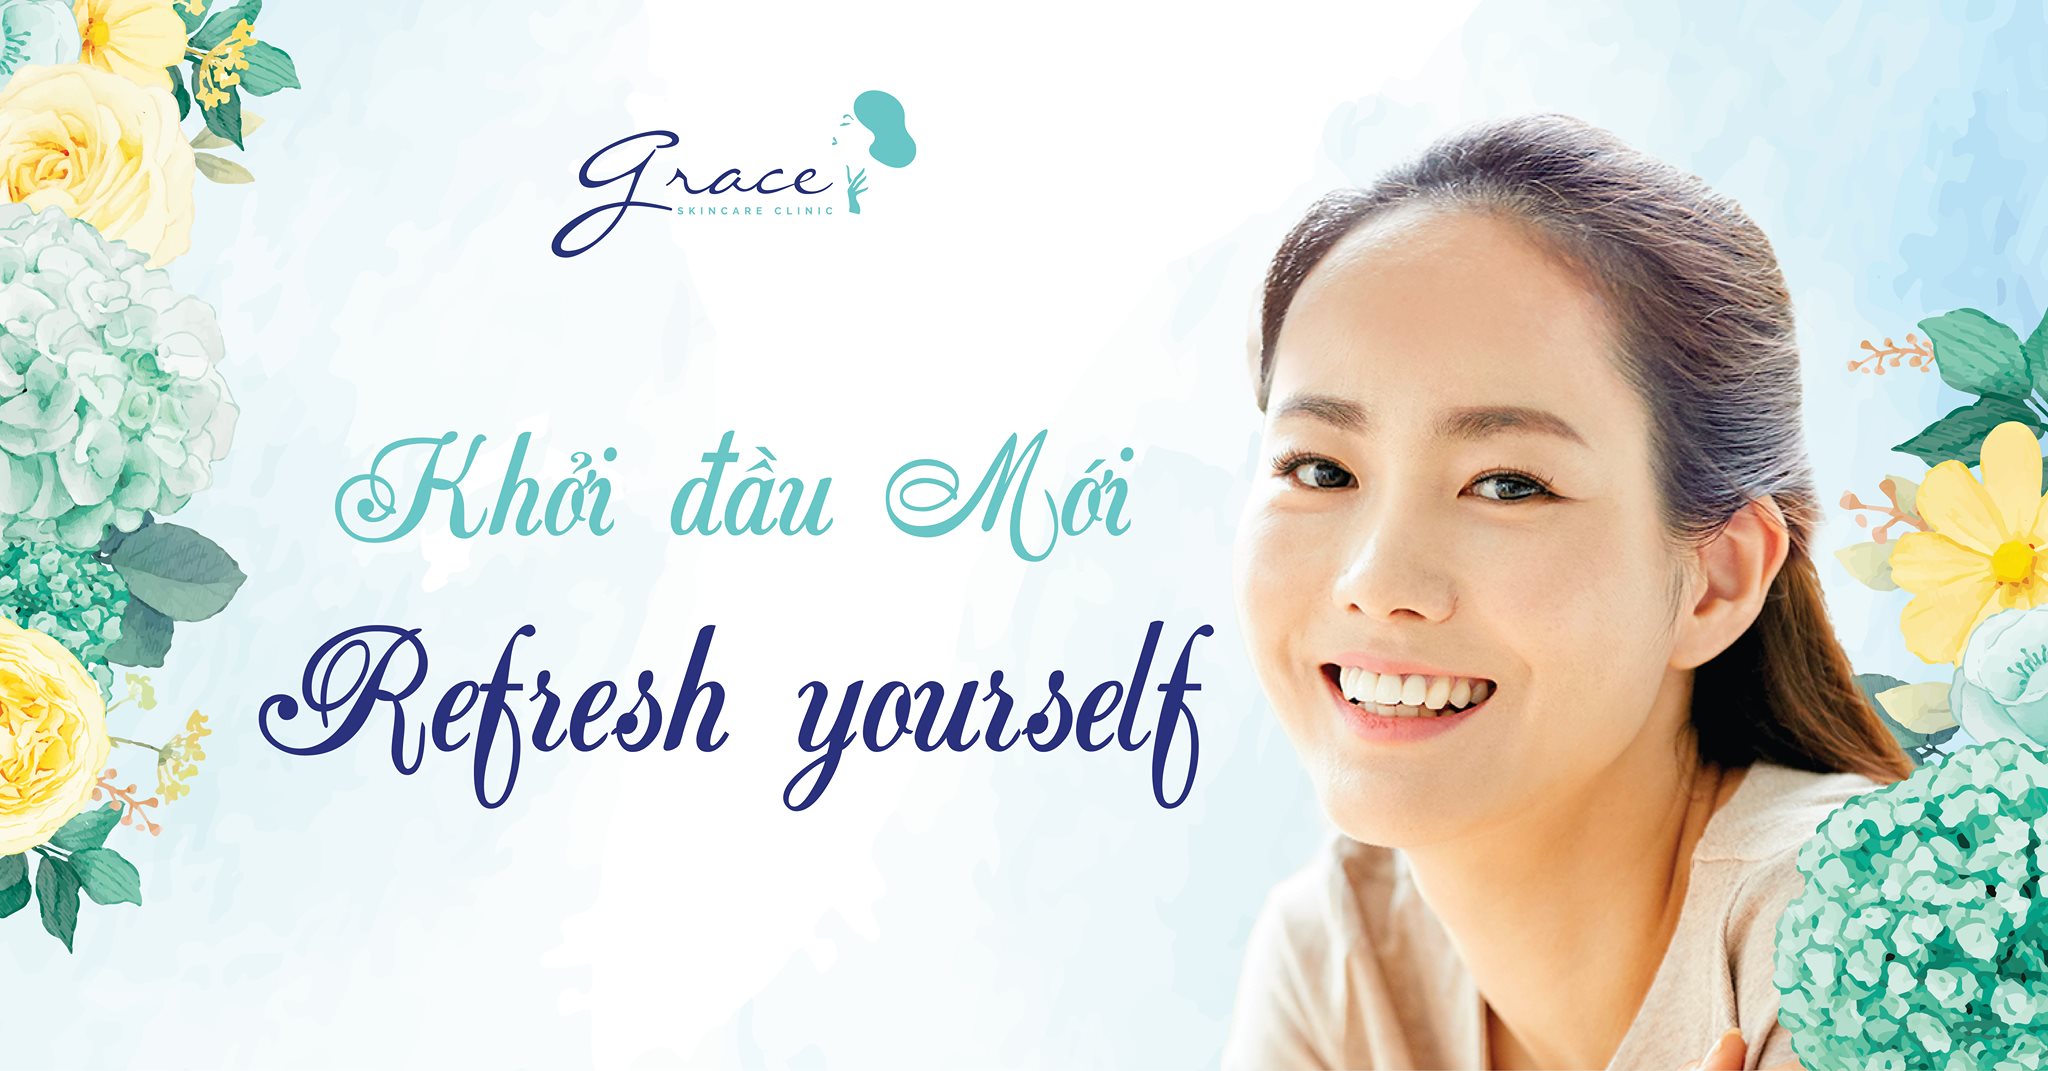 TRƯỞNG NHÓM Y KHOA ĐIỀU DƯỠNG | MEDICAL TEAM LEADER-Công ty TNHH May Hun (Thương hiệu Grace Skincare Clinic)